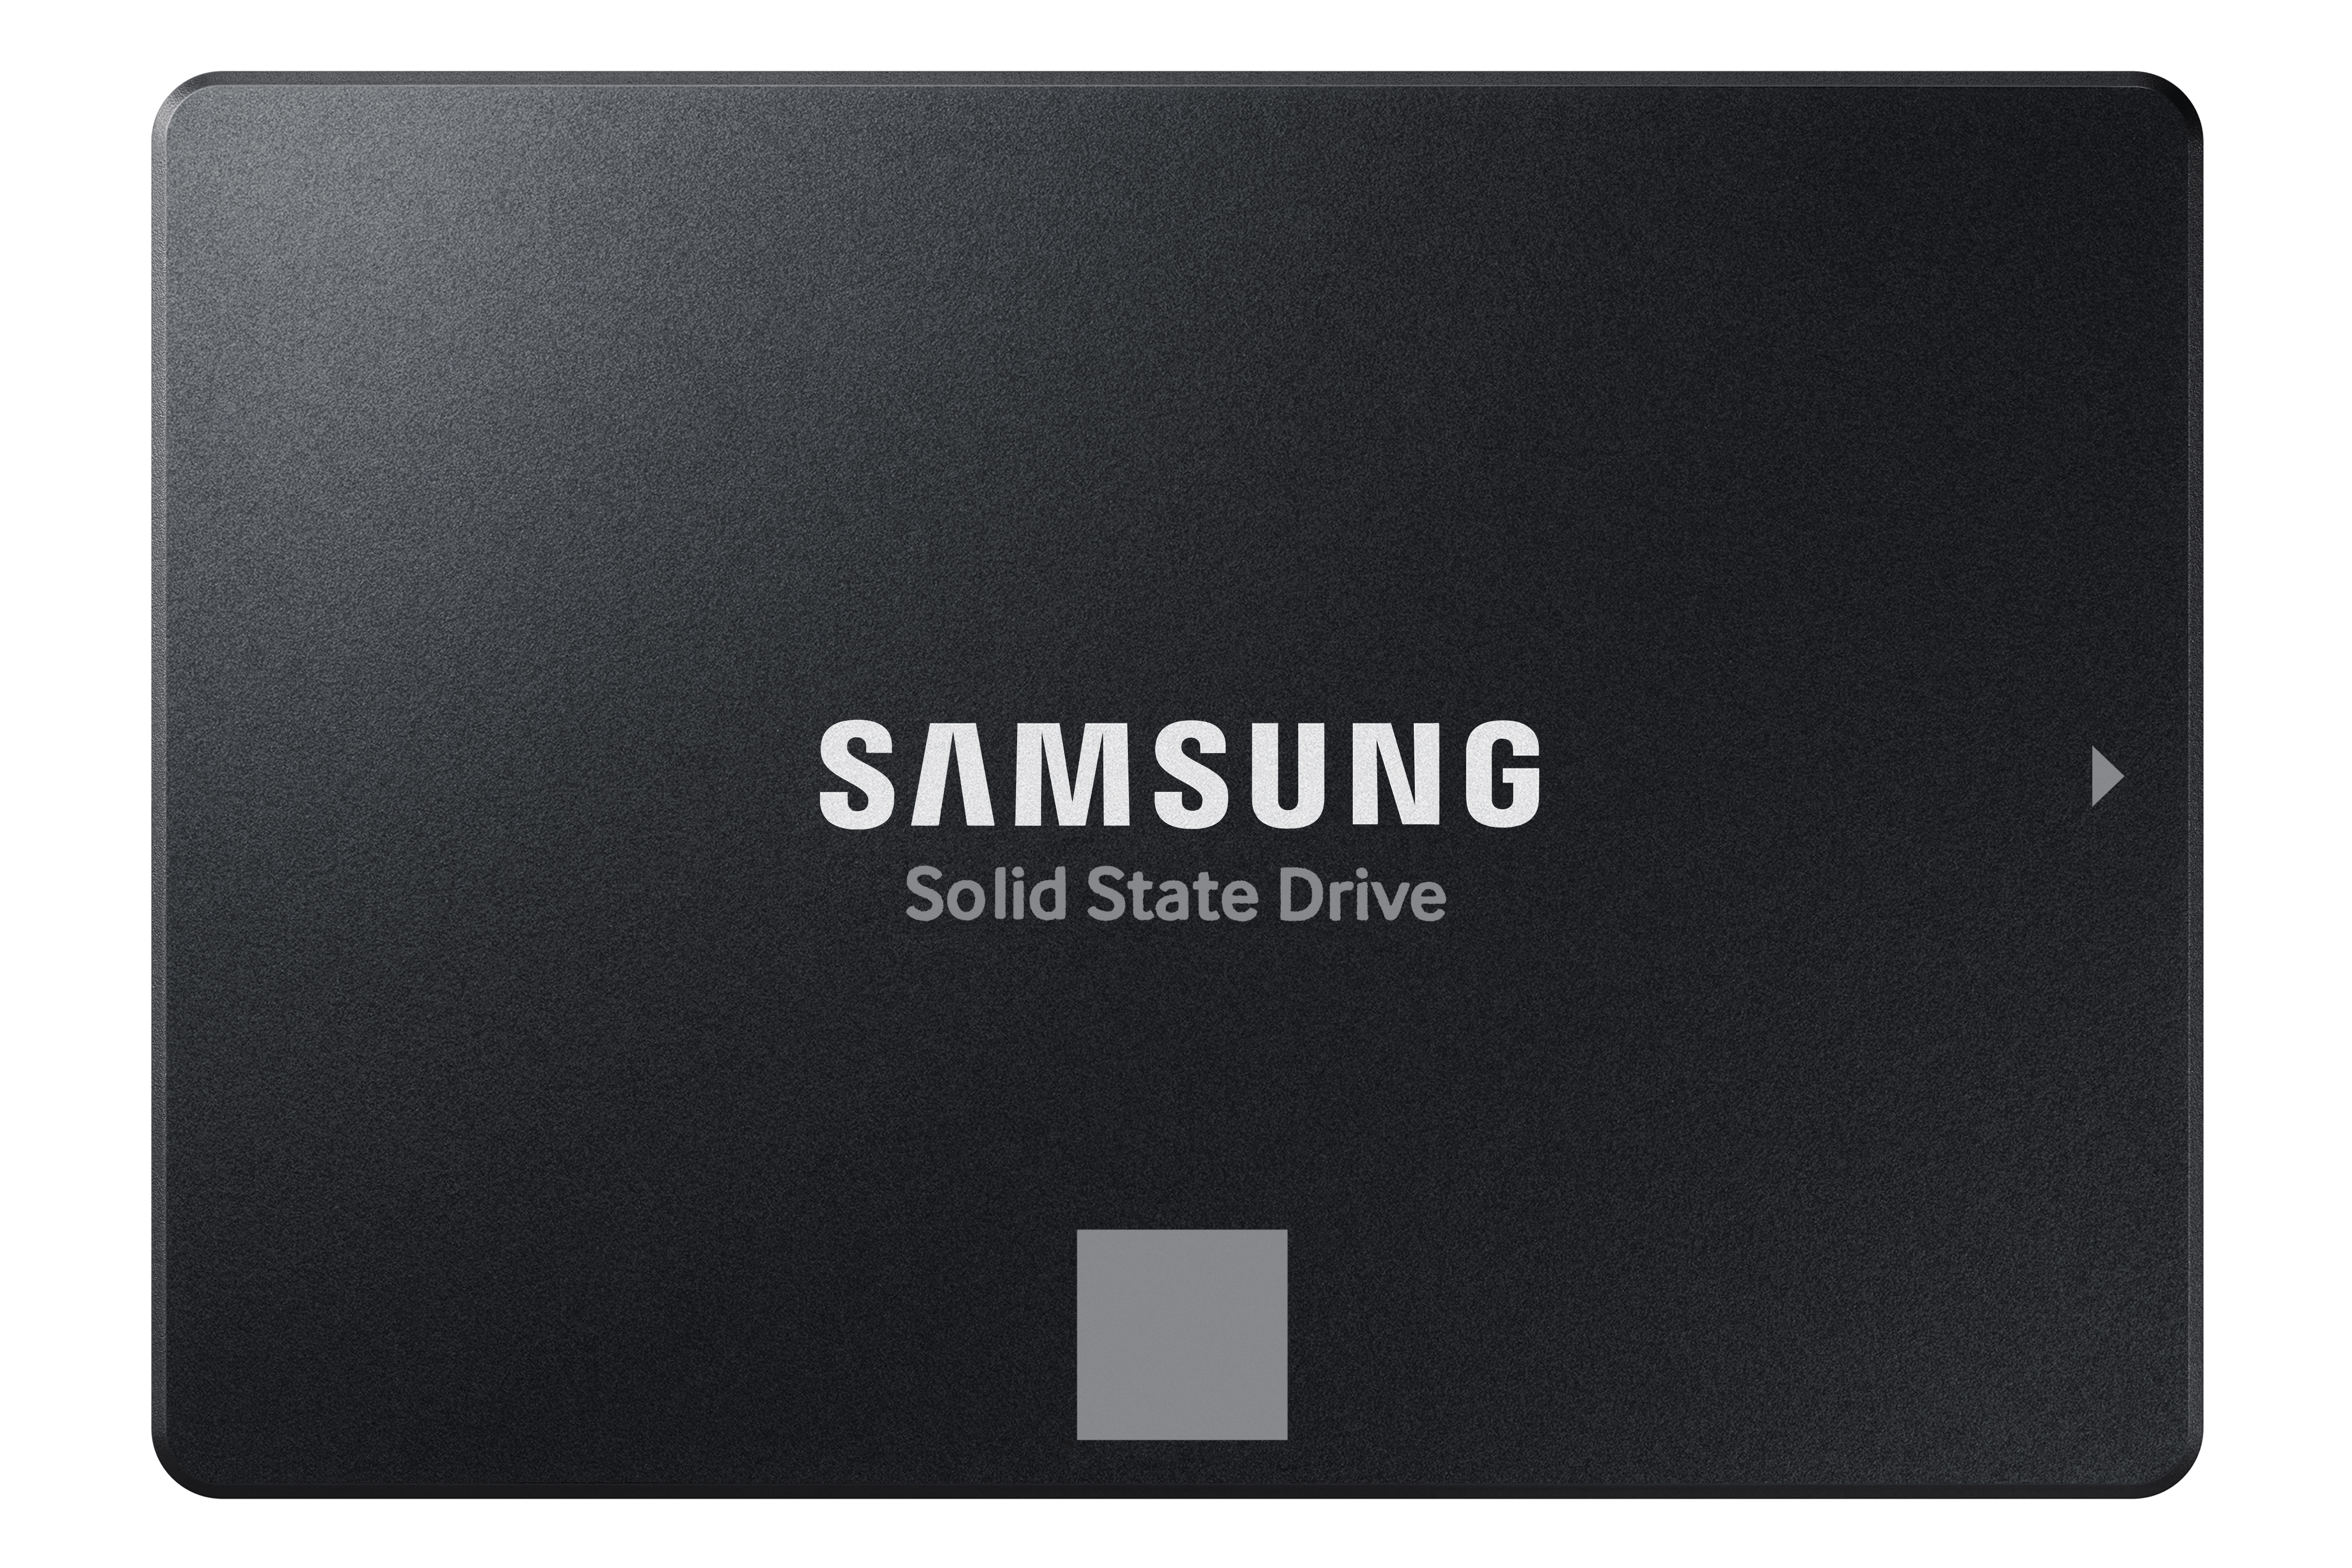 EVO SATA SSD 500GB Memory & Storage - MZ-77E500B/AM | Samsung US